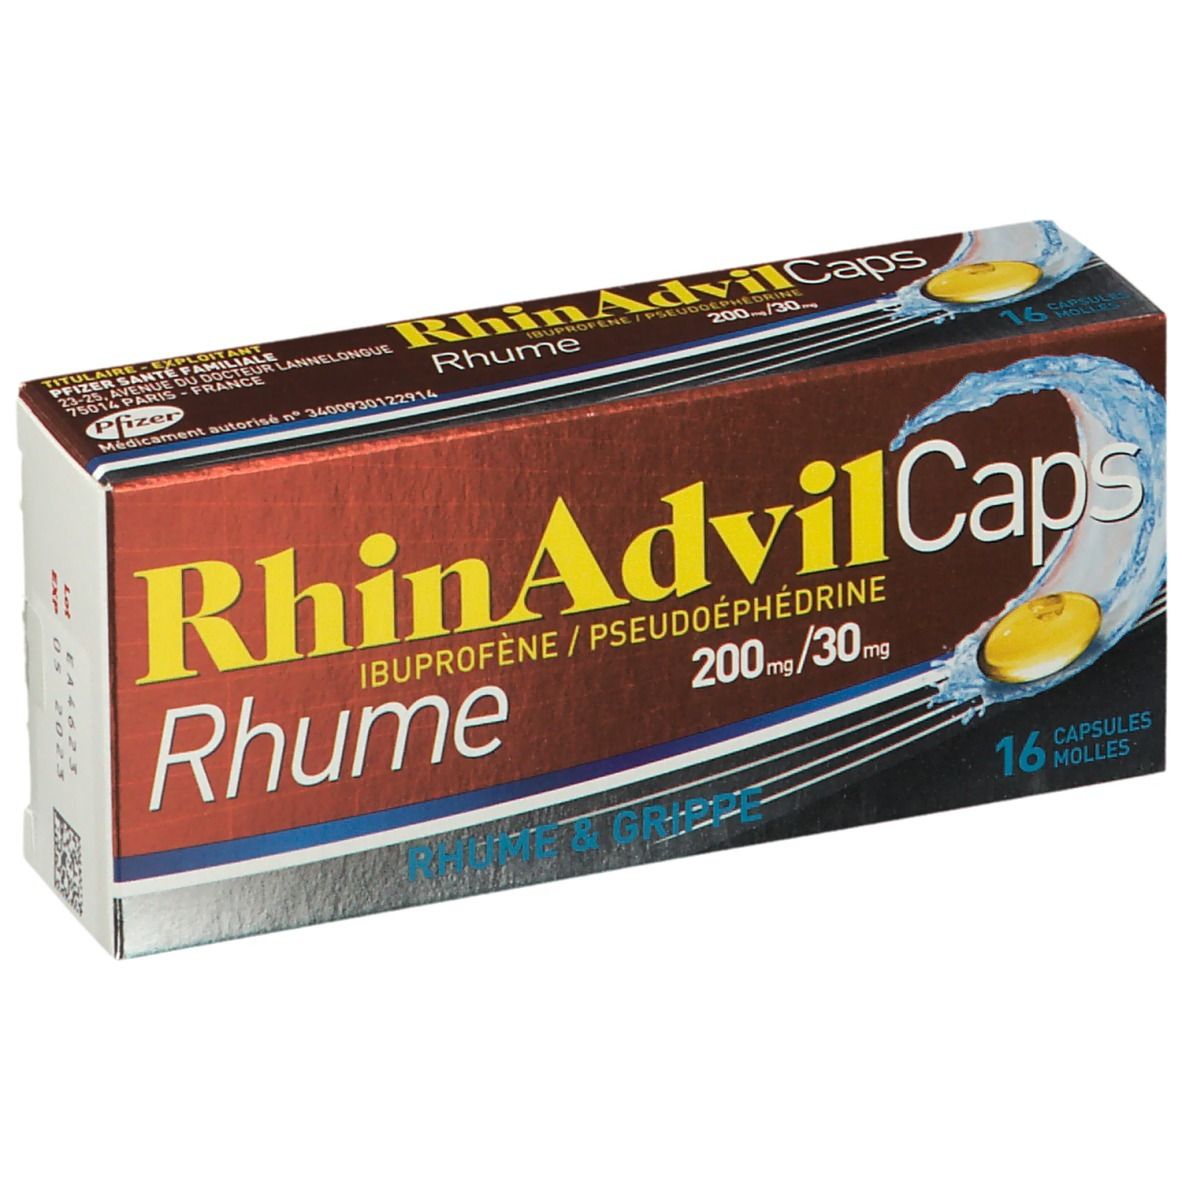 RhinAdvil® Caps Rhume 200 mg/30 mg